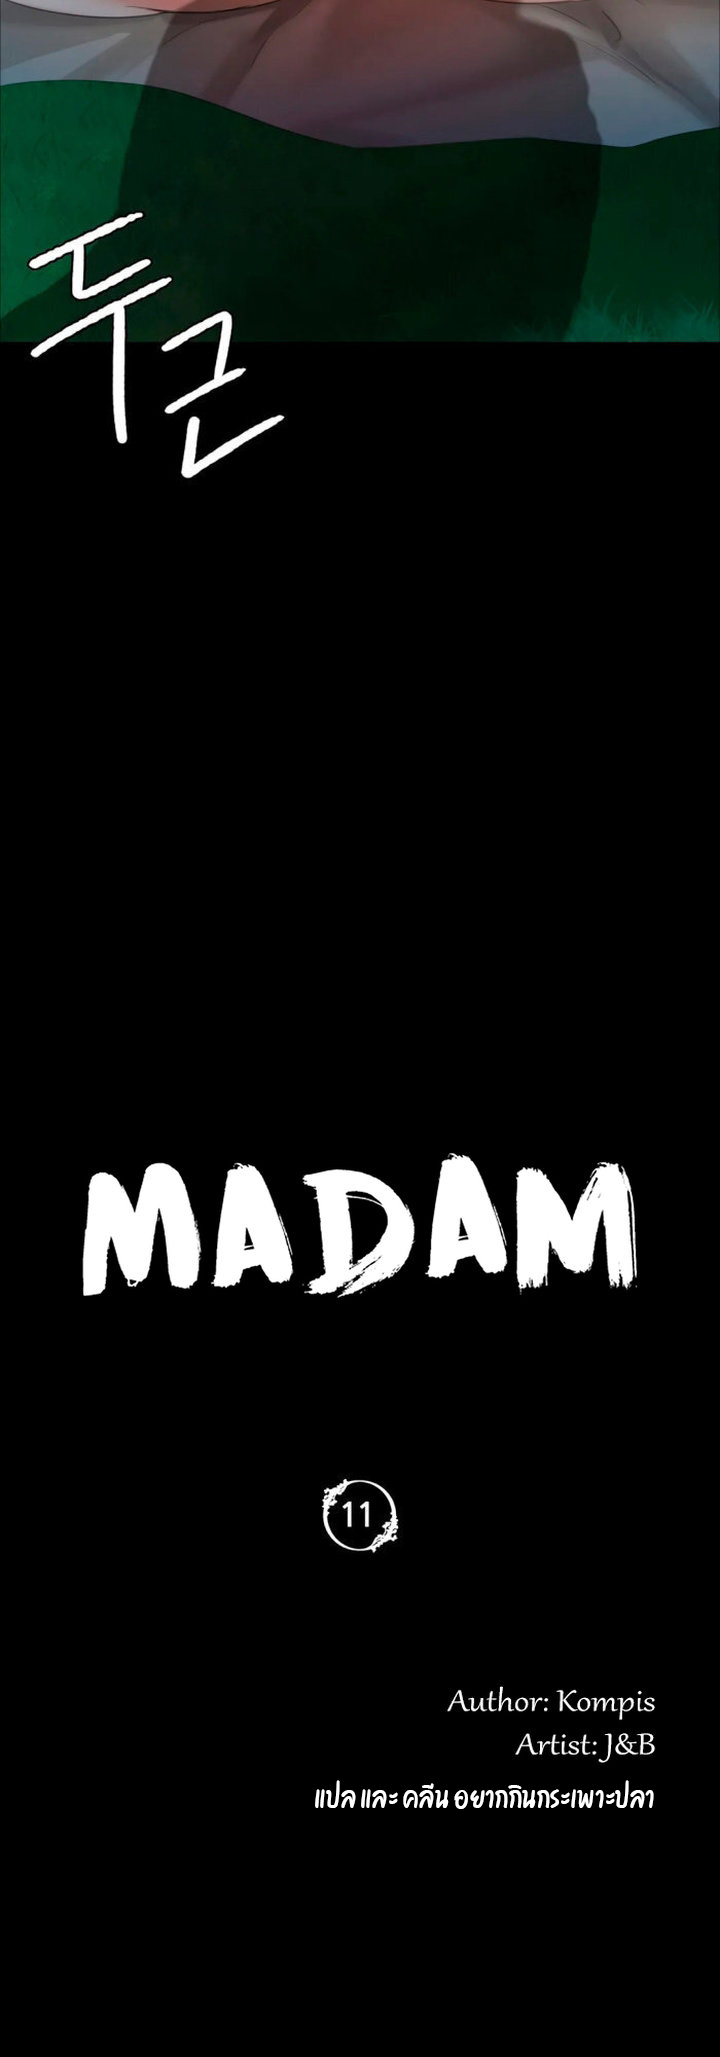 Madam 11 (5)